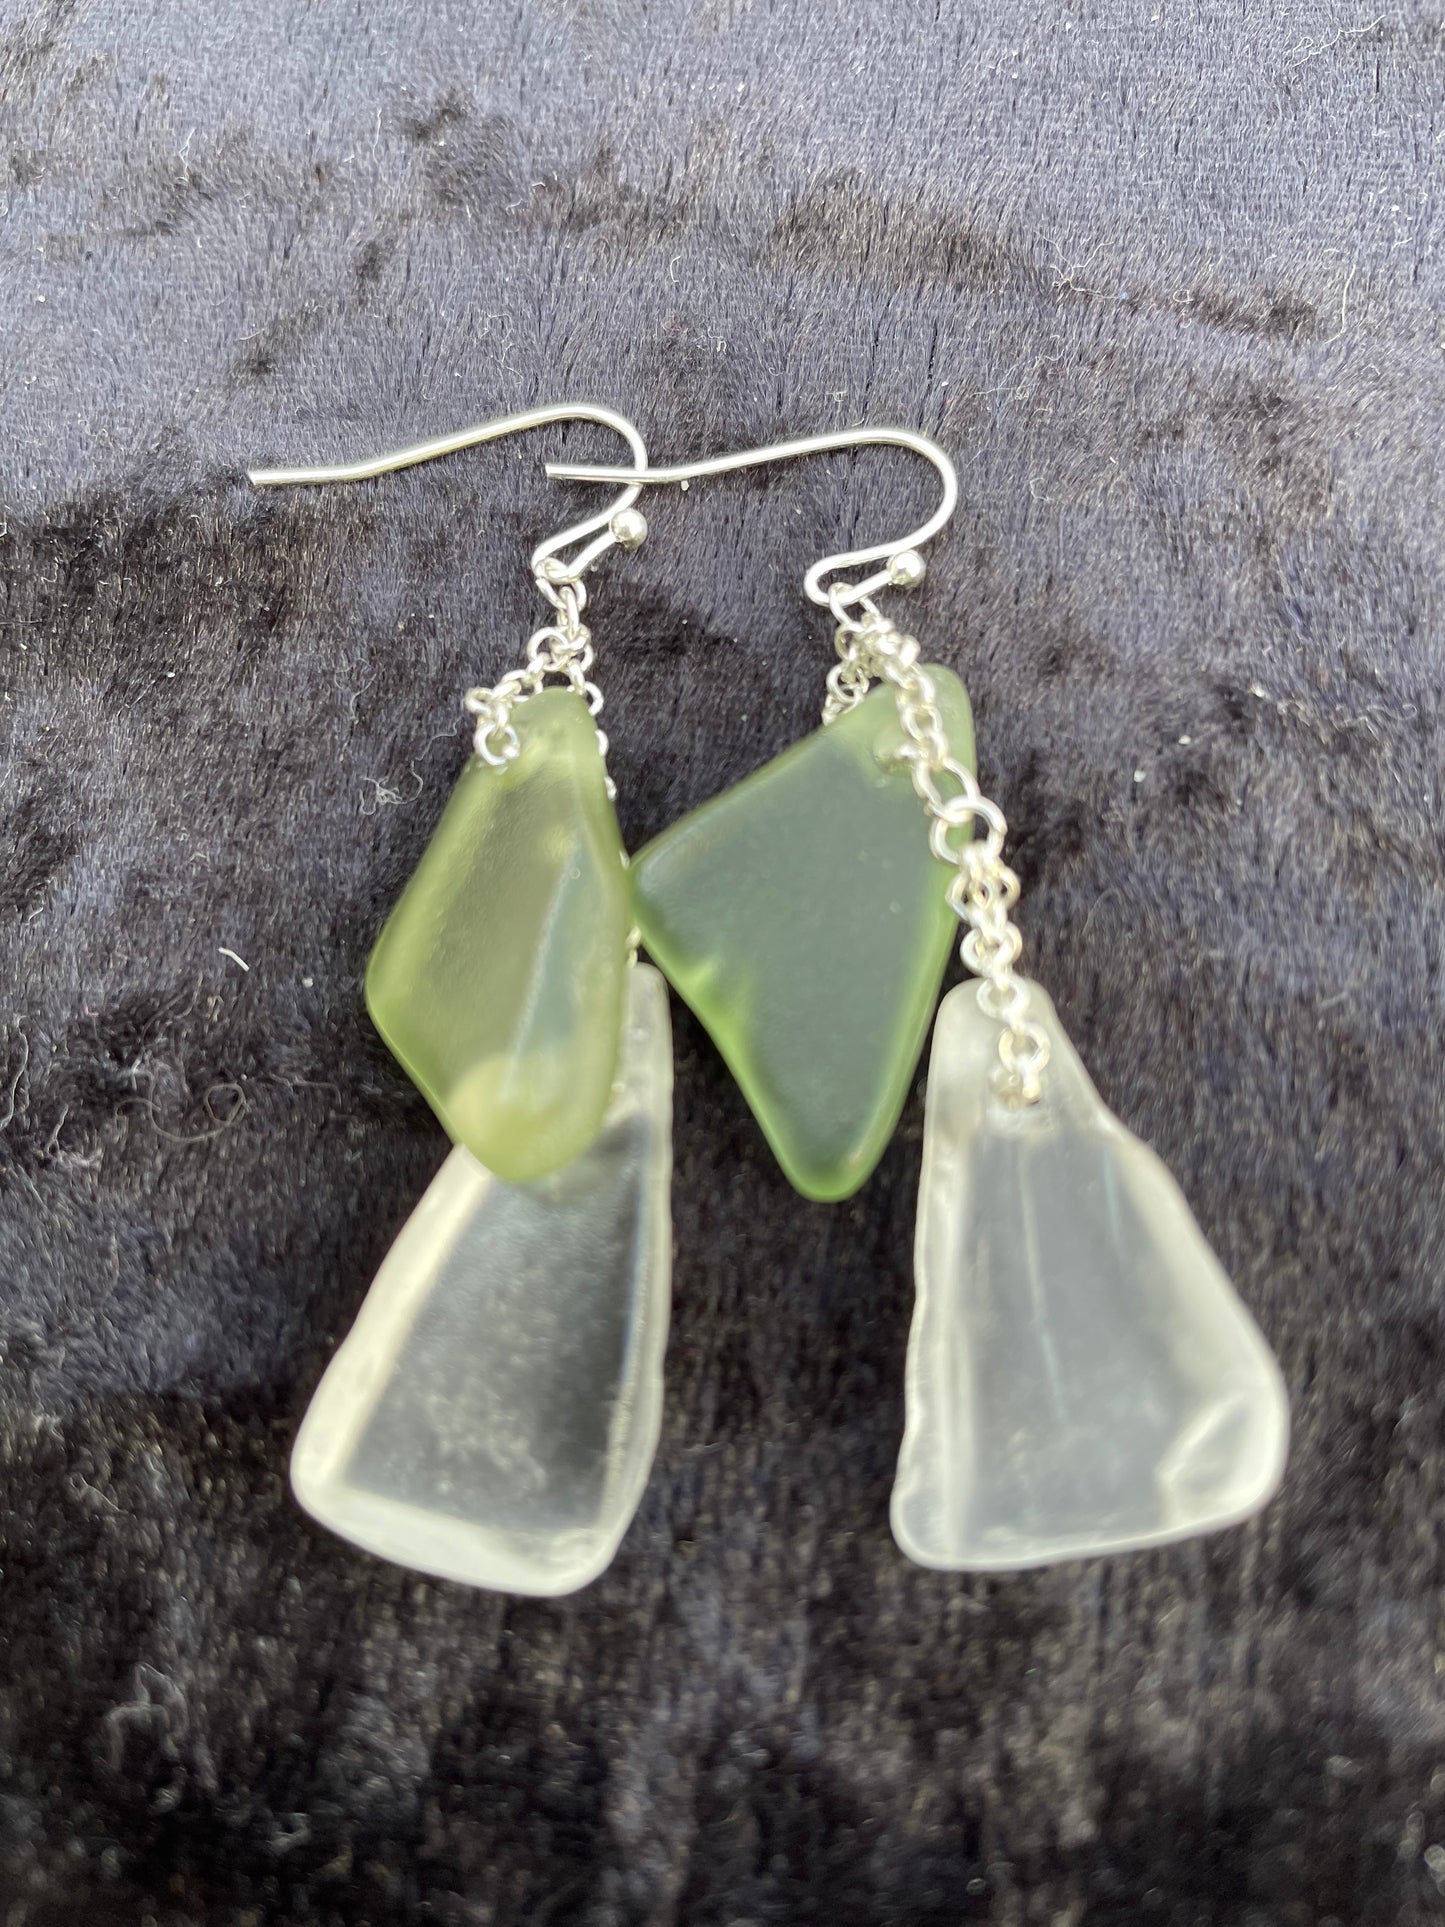 Green & white Seaglass earrings